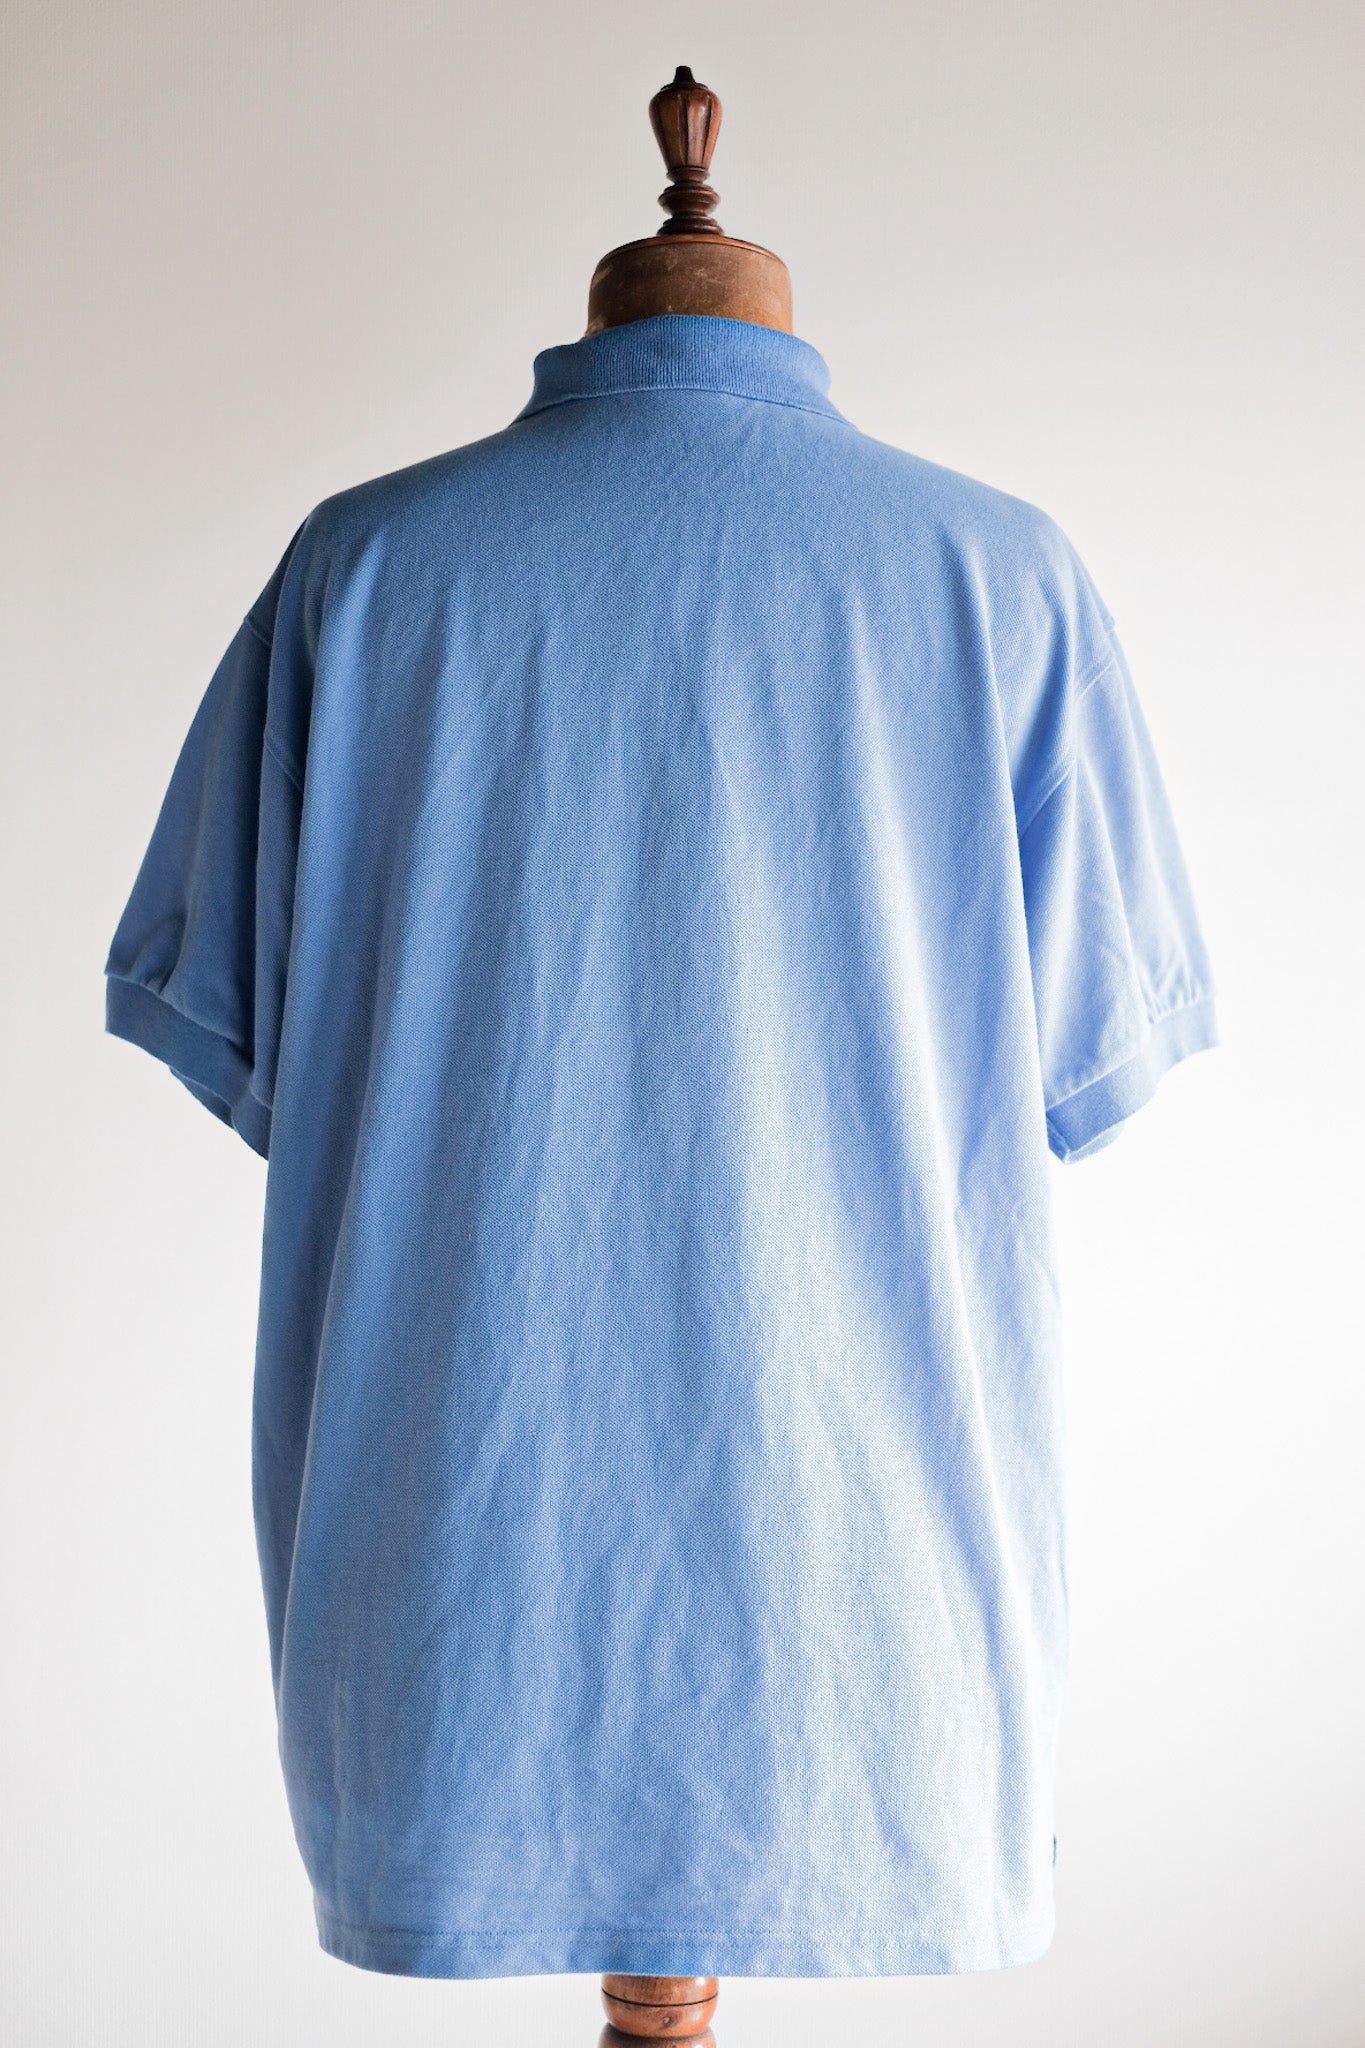 [~ 90's] Chemise Lacoste S/S Polo Shirt Size.7 "Light Blue"